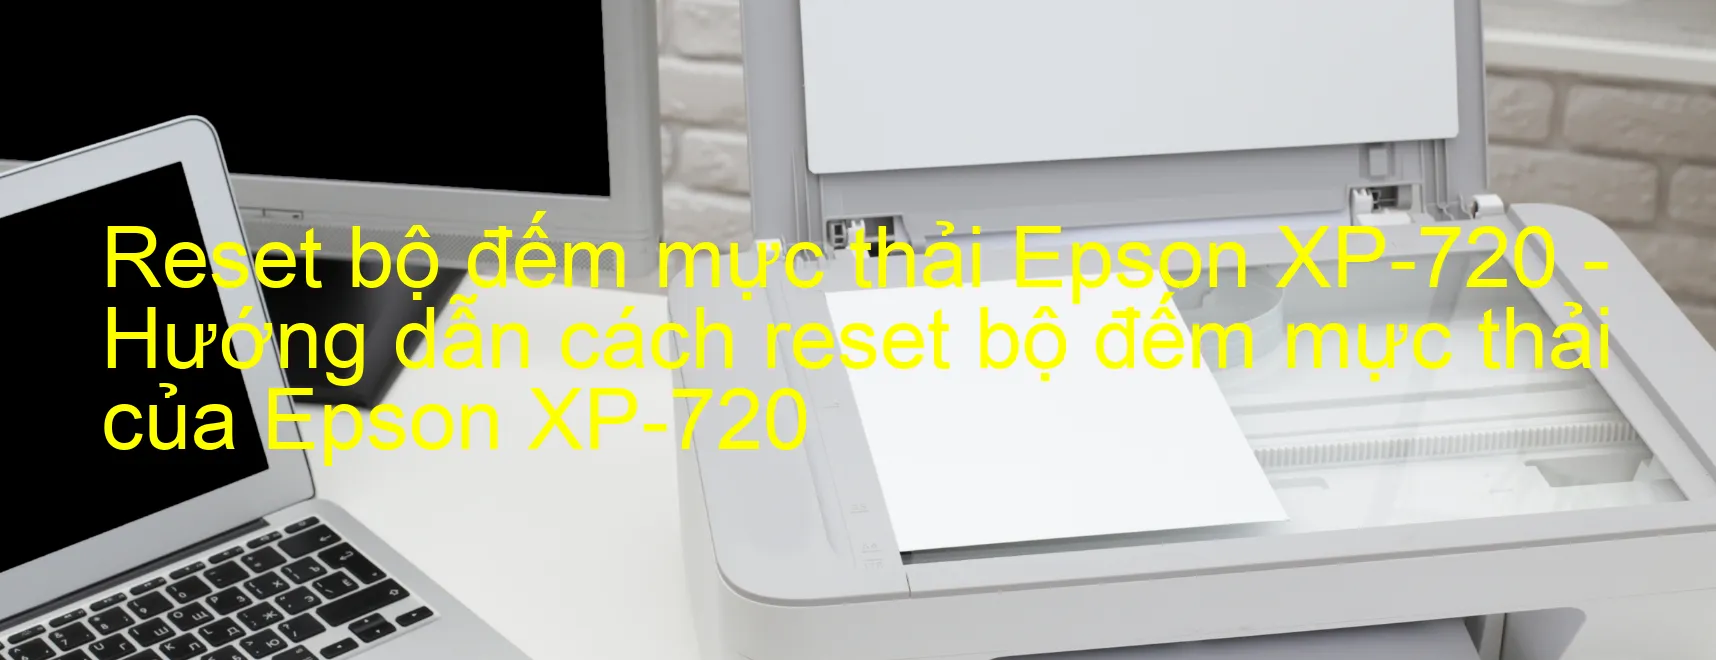 Reset bộ đếm mực thải Epson XP-720 - Hướng dẫn cách reset bộ đếm mực thải của Epson XP-720